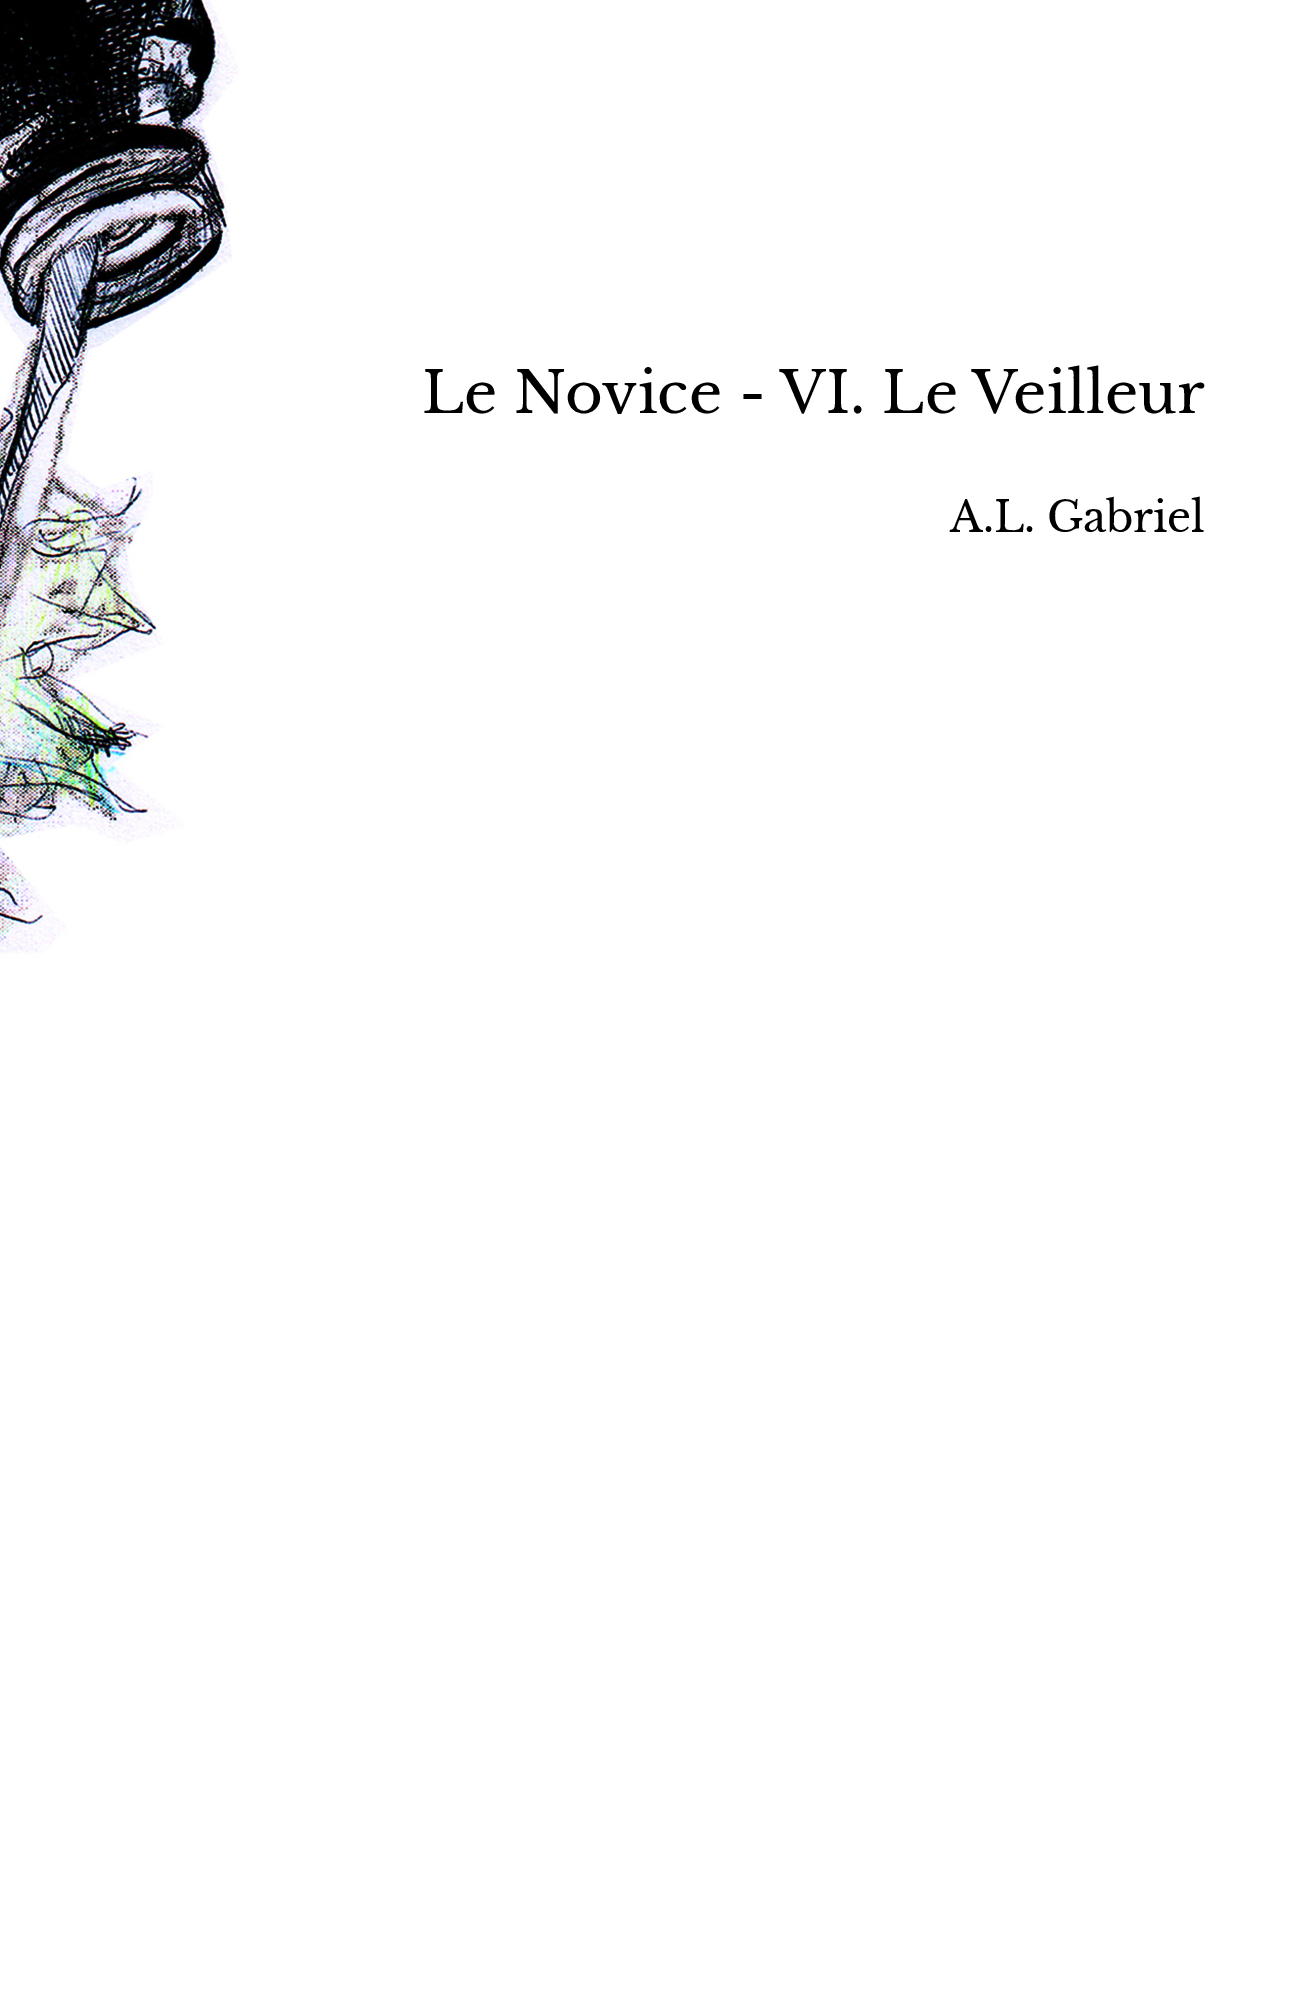 Le Novice - VI. Le Veilleur